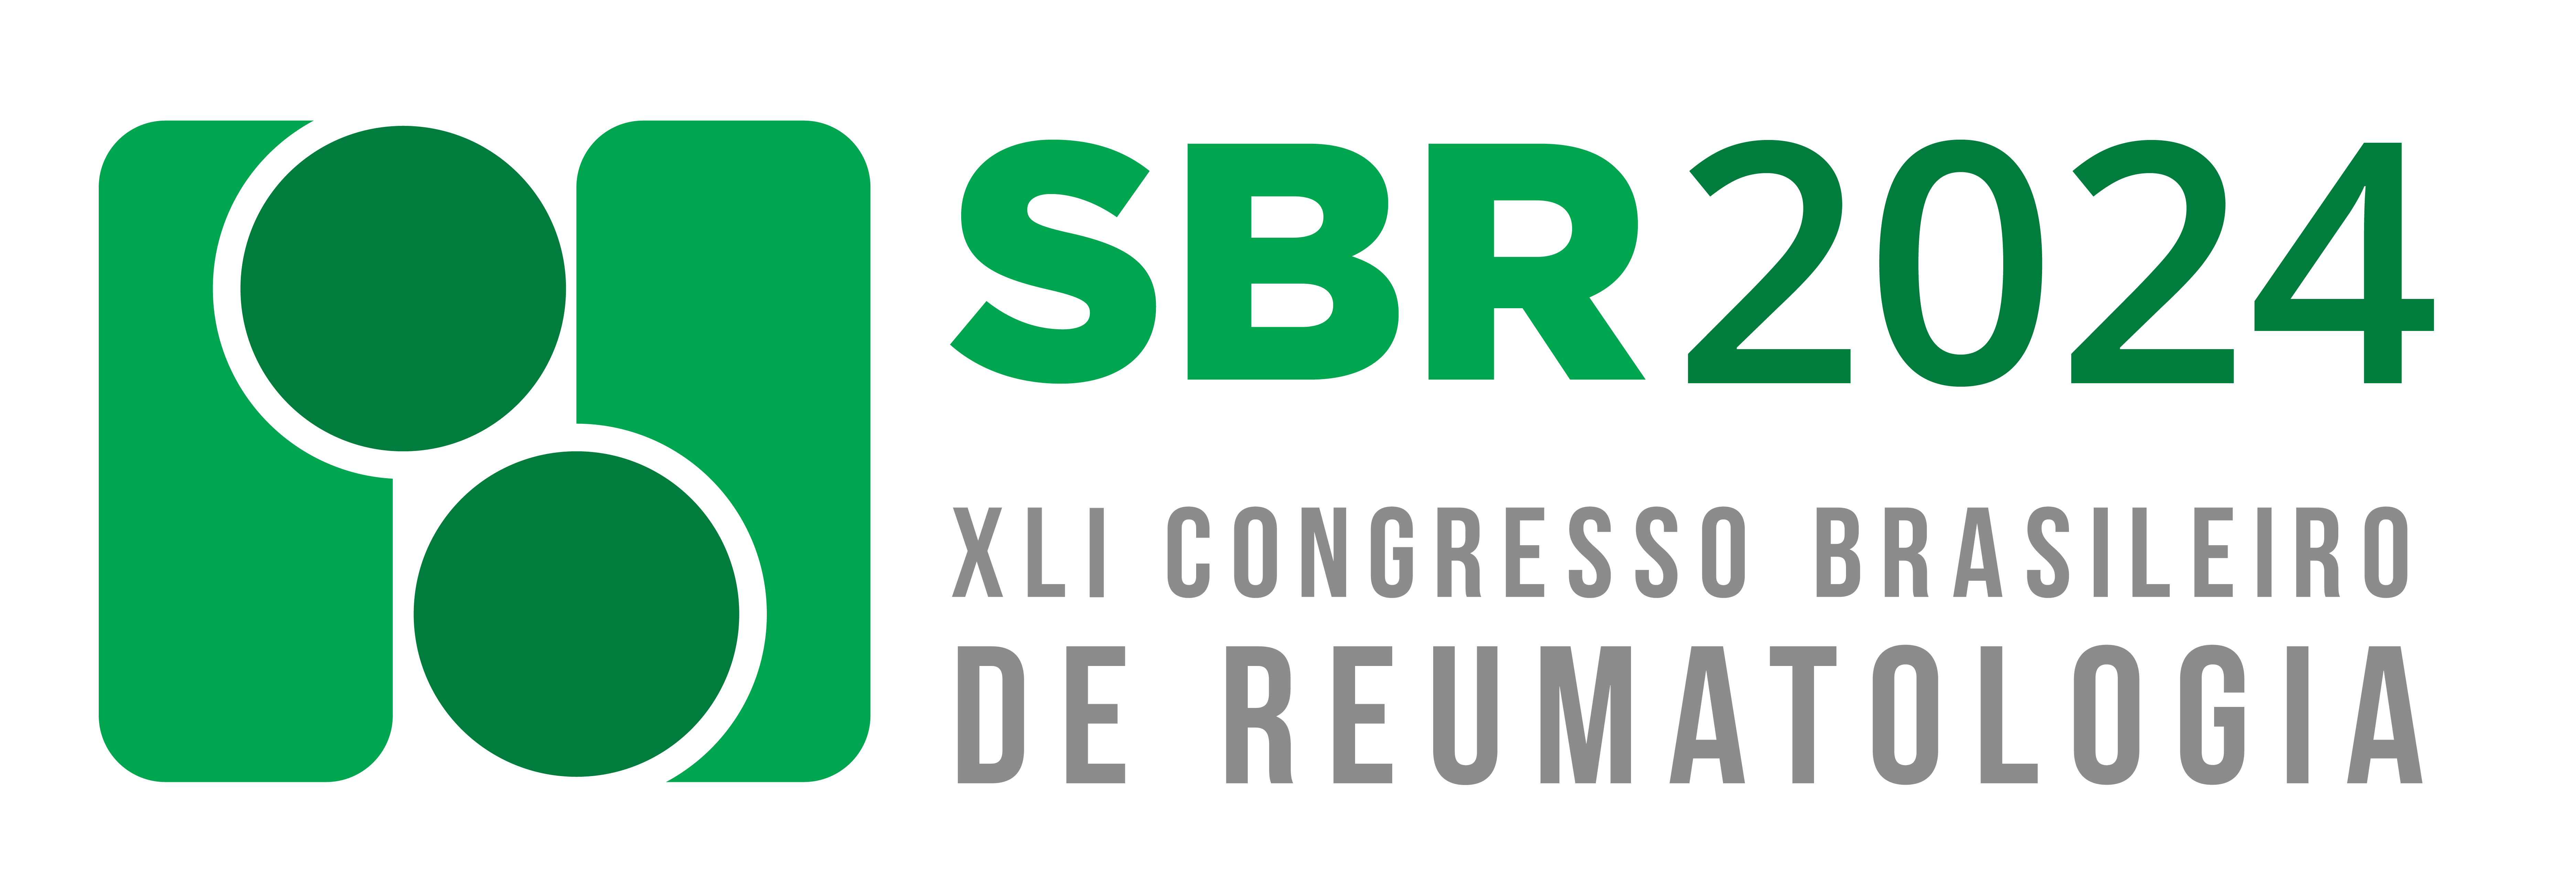 XLI Congresso Brasileiro de Reumatologia - SBR 2024